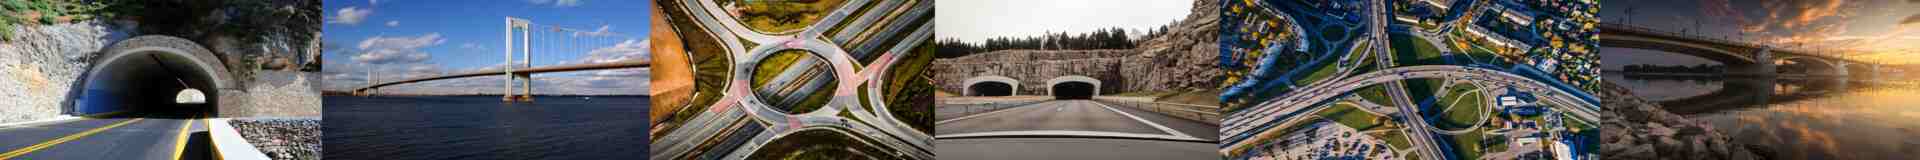 International Japan tunnels tenders